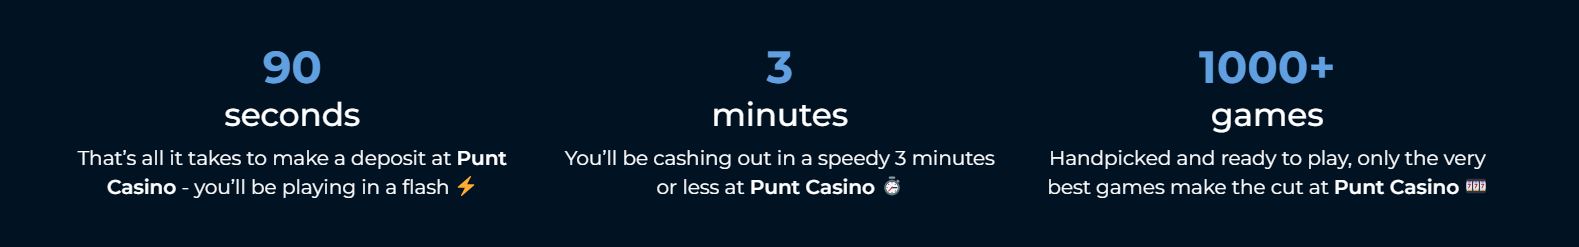 Punt Casino - Transactions rapides - Crypto casino